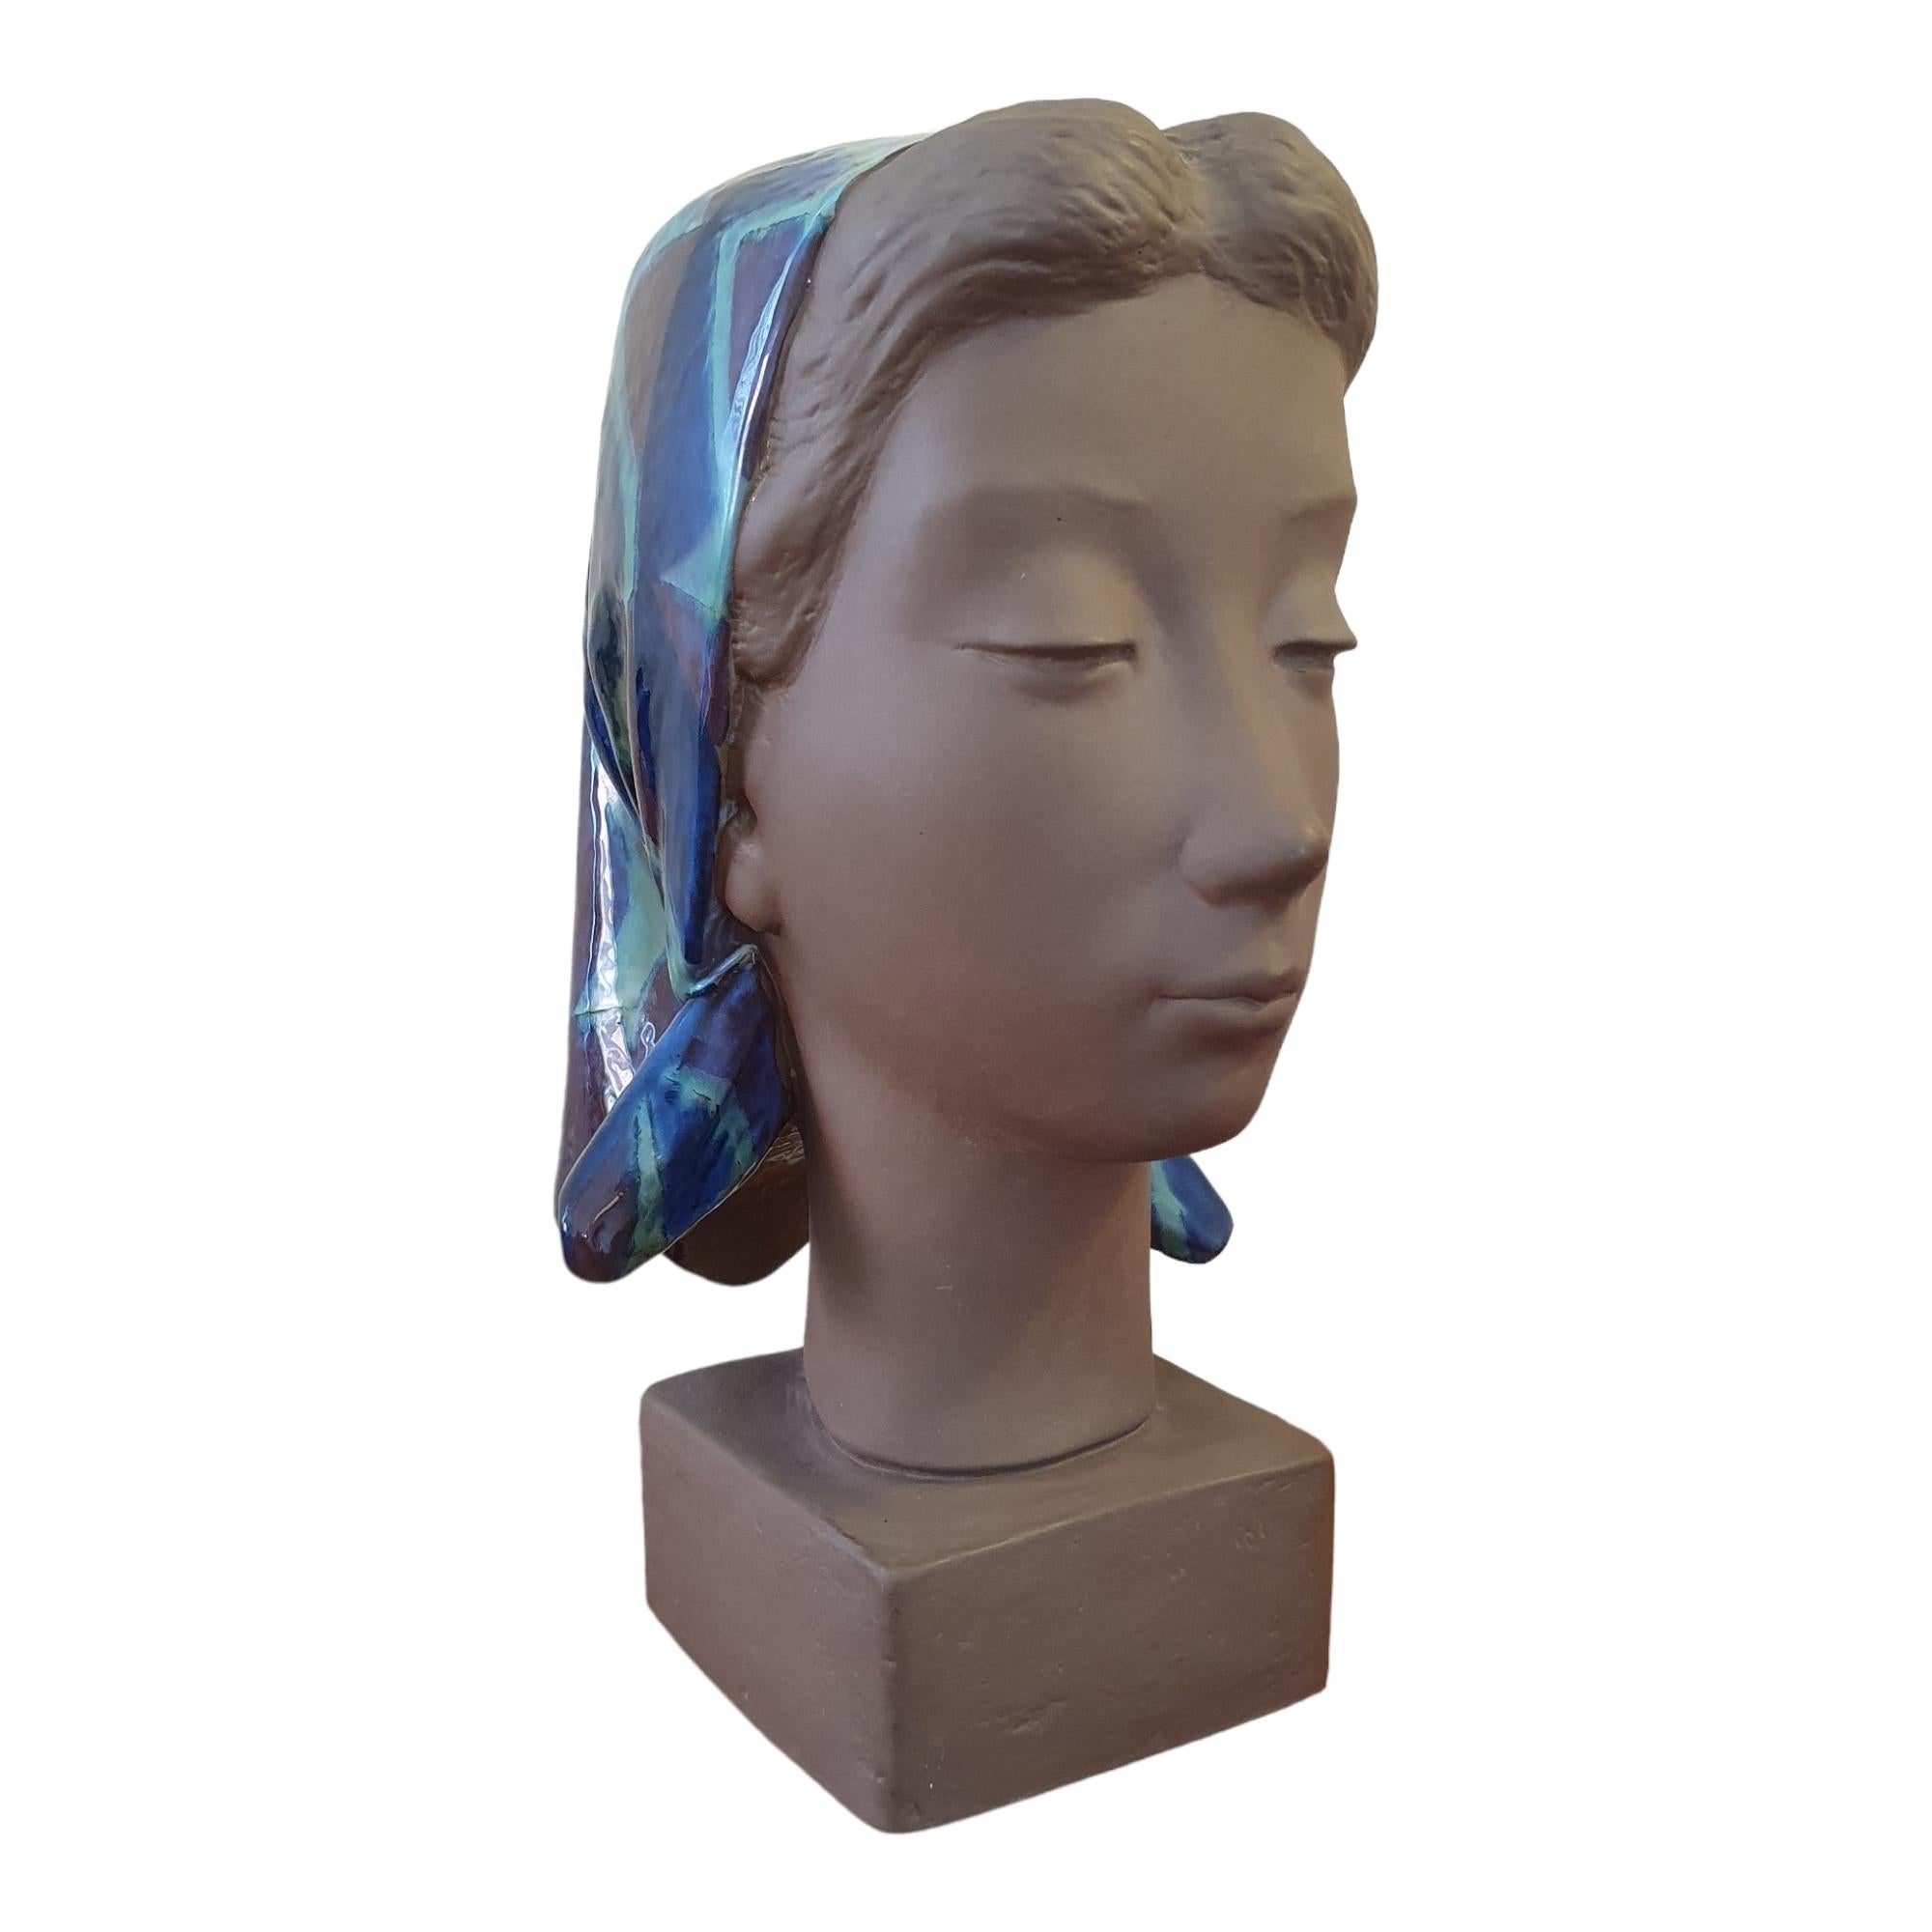 Un grand et beau buste de femme aux yeux fermés et au regard serein. Il s'agit d'une sculpture classique de Johannes Hedegaard avec un équilibre ludique entre la finition mate de la céramique et la glaçure bleue et verdâtre typique qui définit